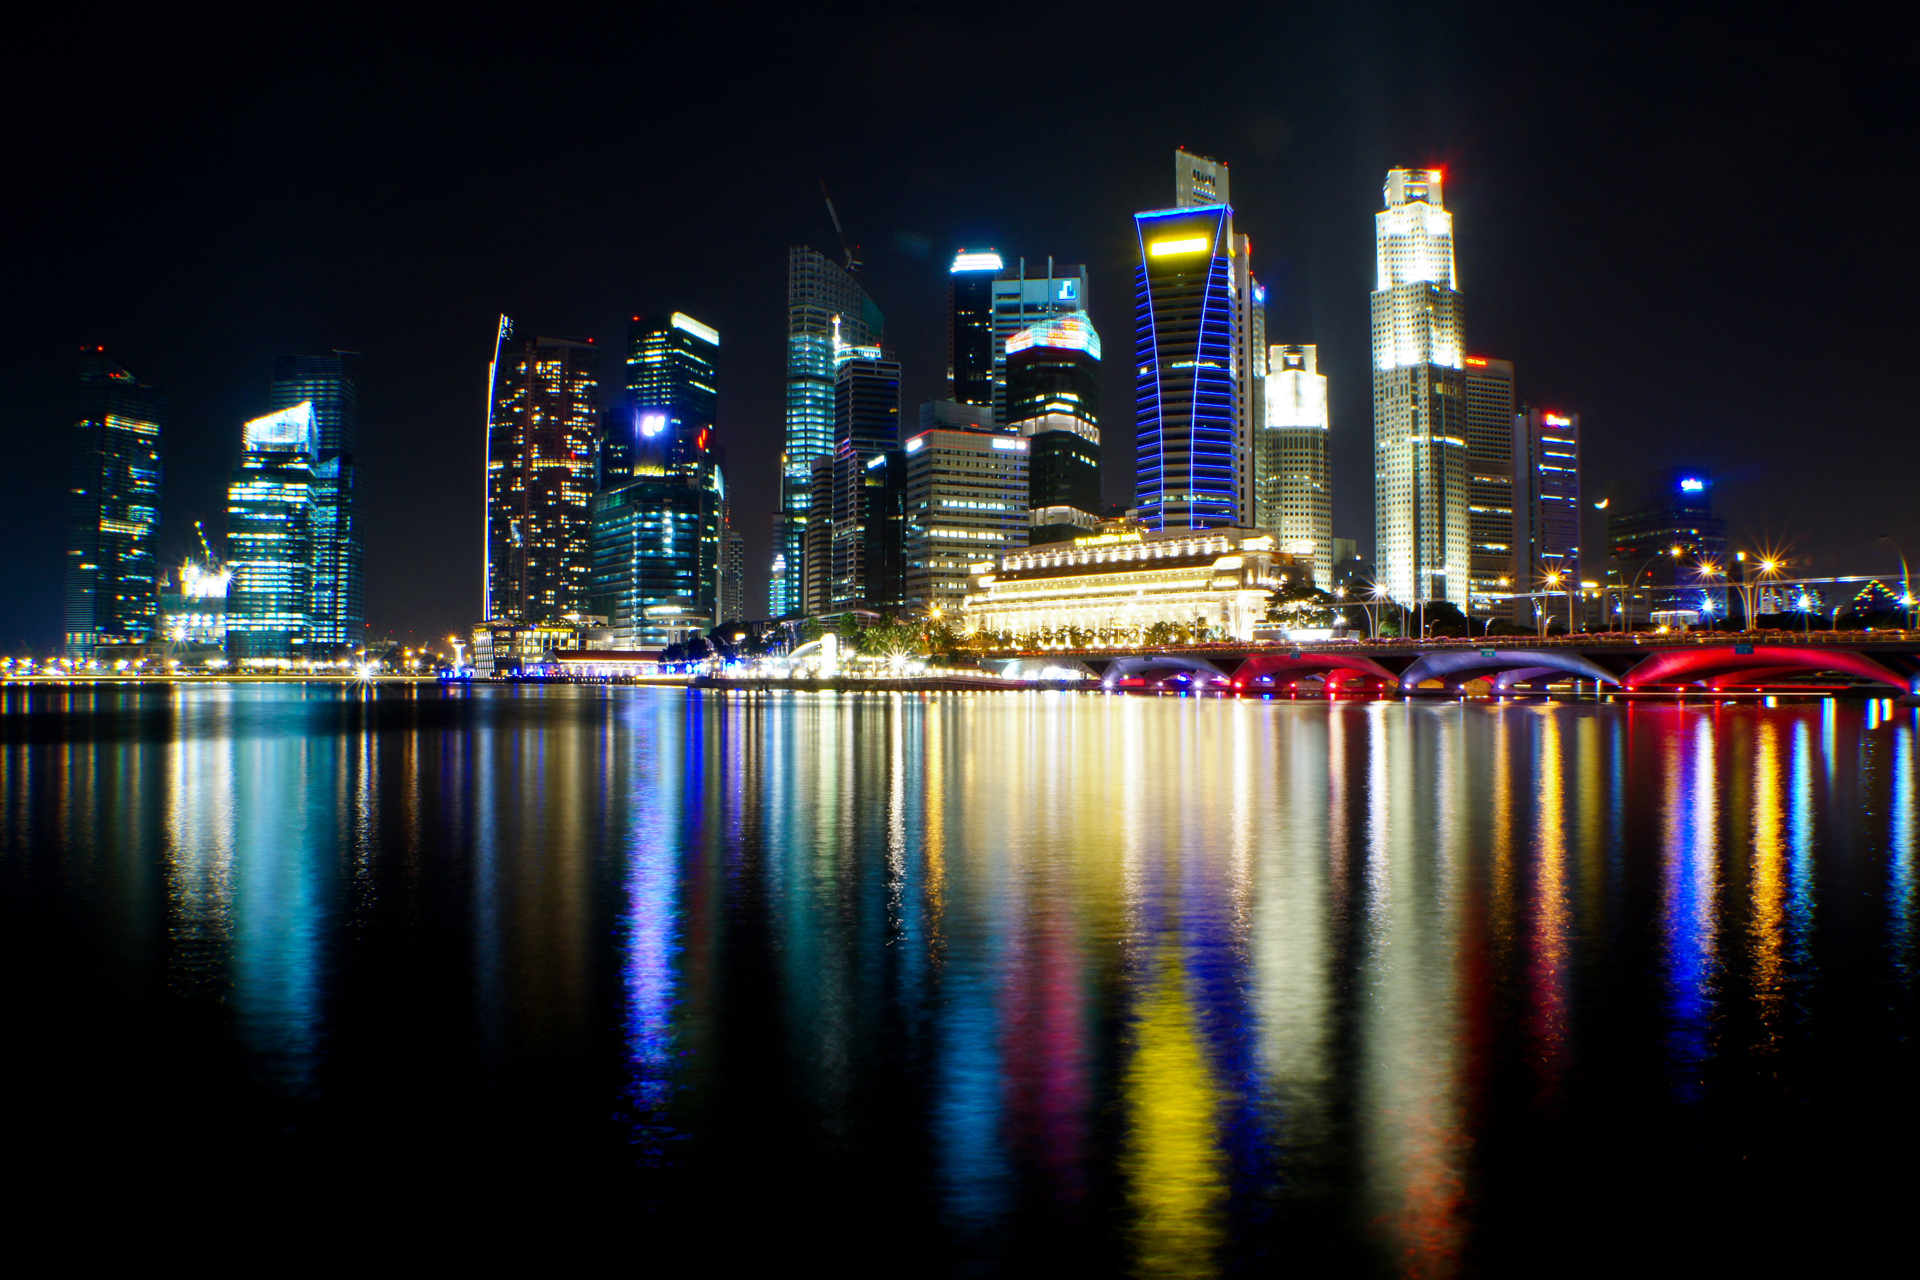 immagini di singapore sfondi,paesaggio urbano,area metropolitana,città,riflessione,orizzonte